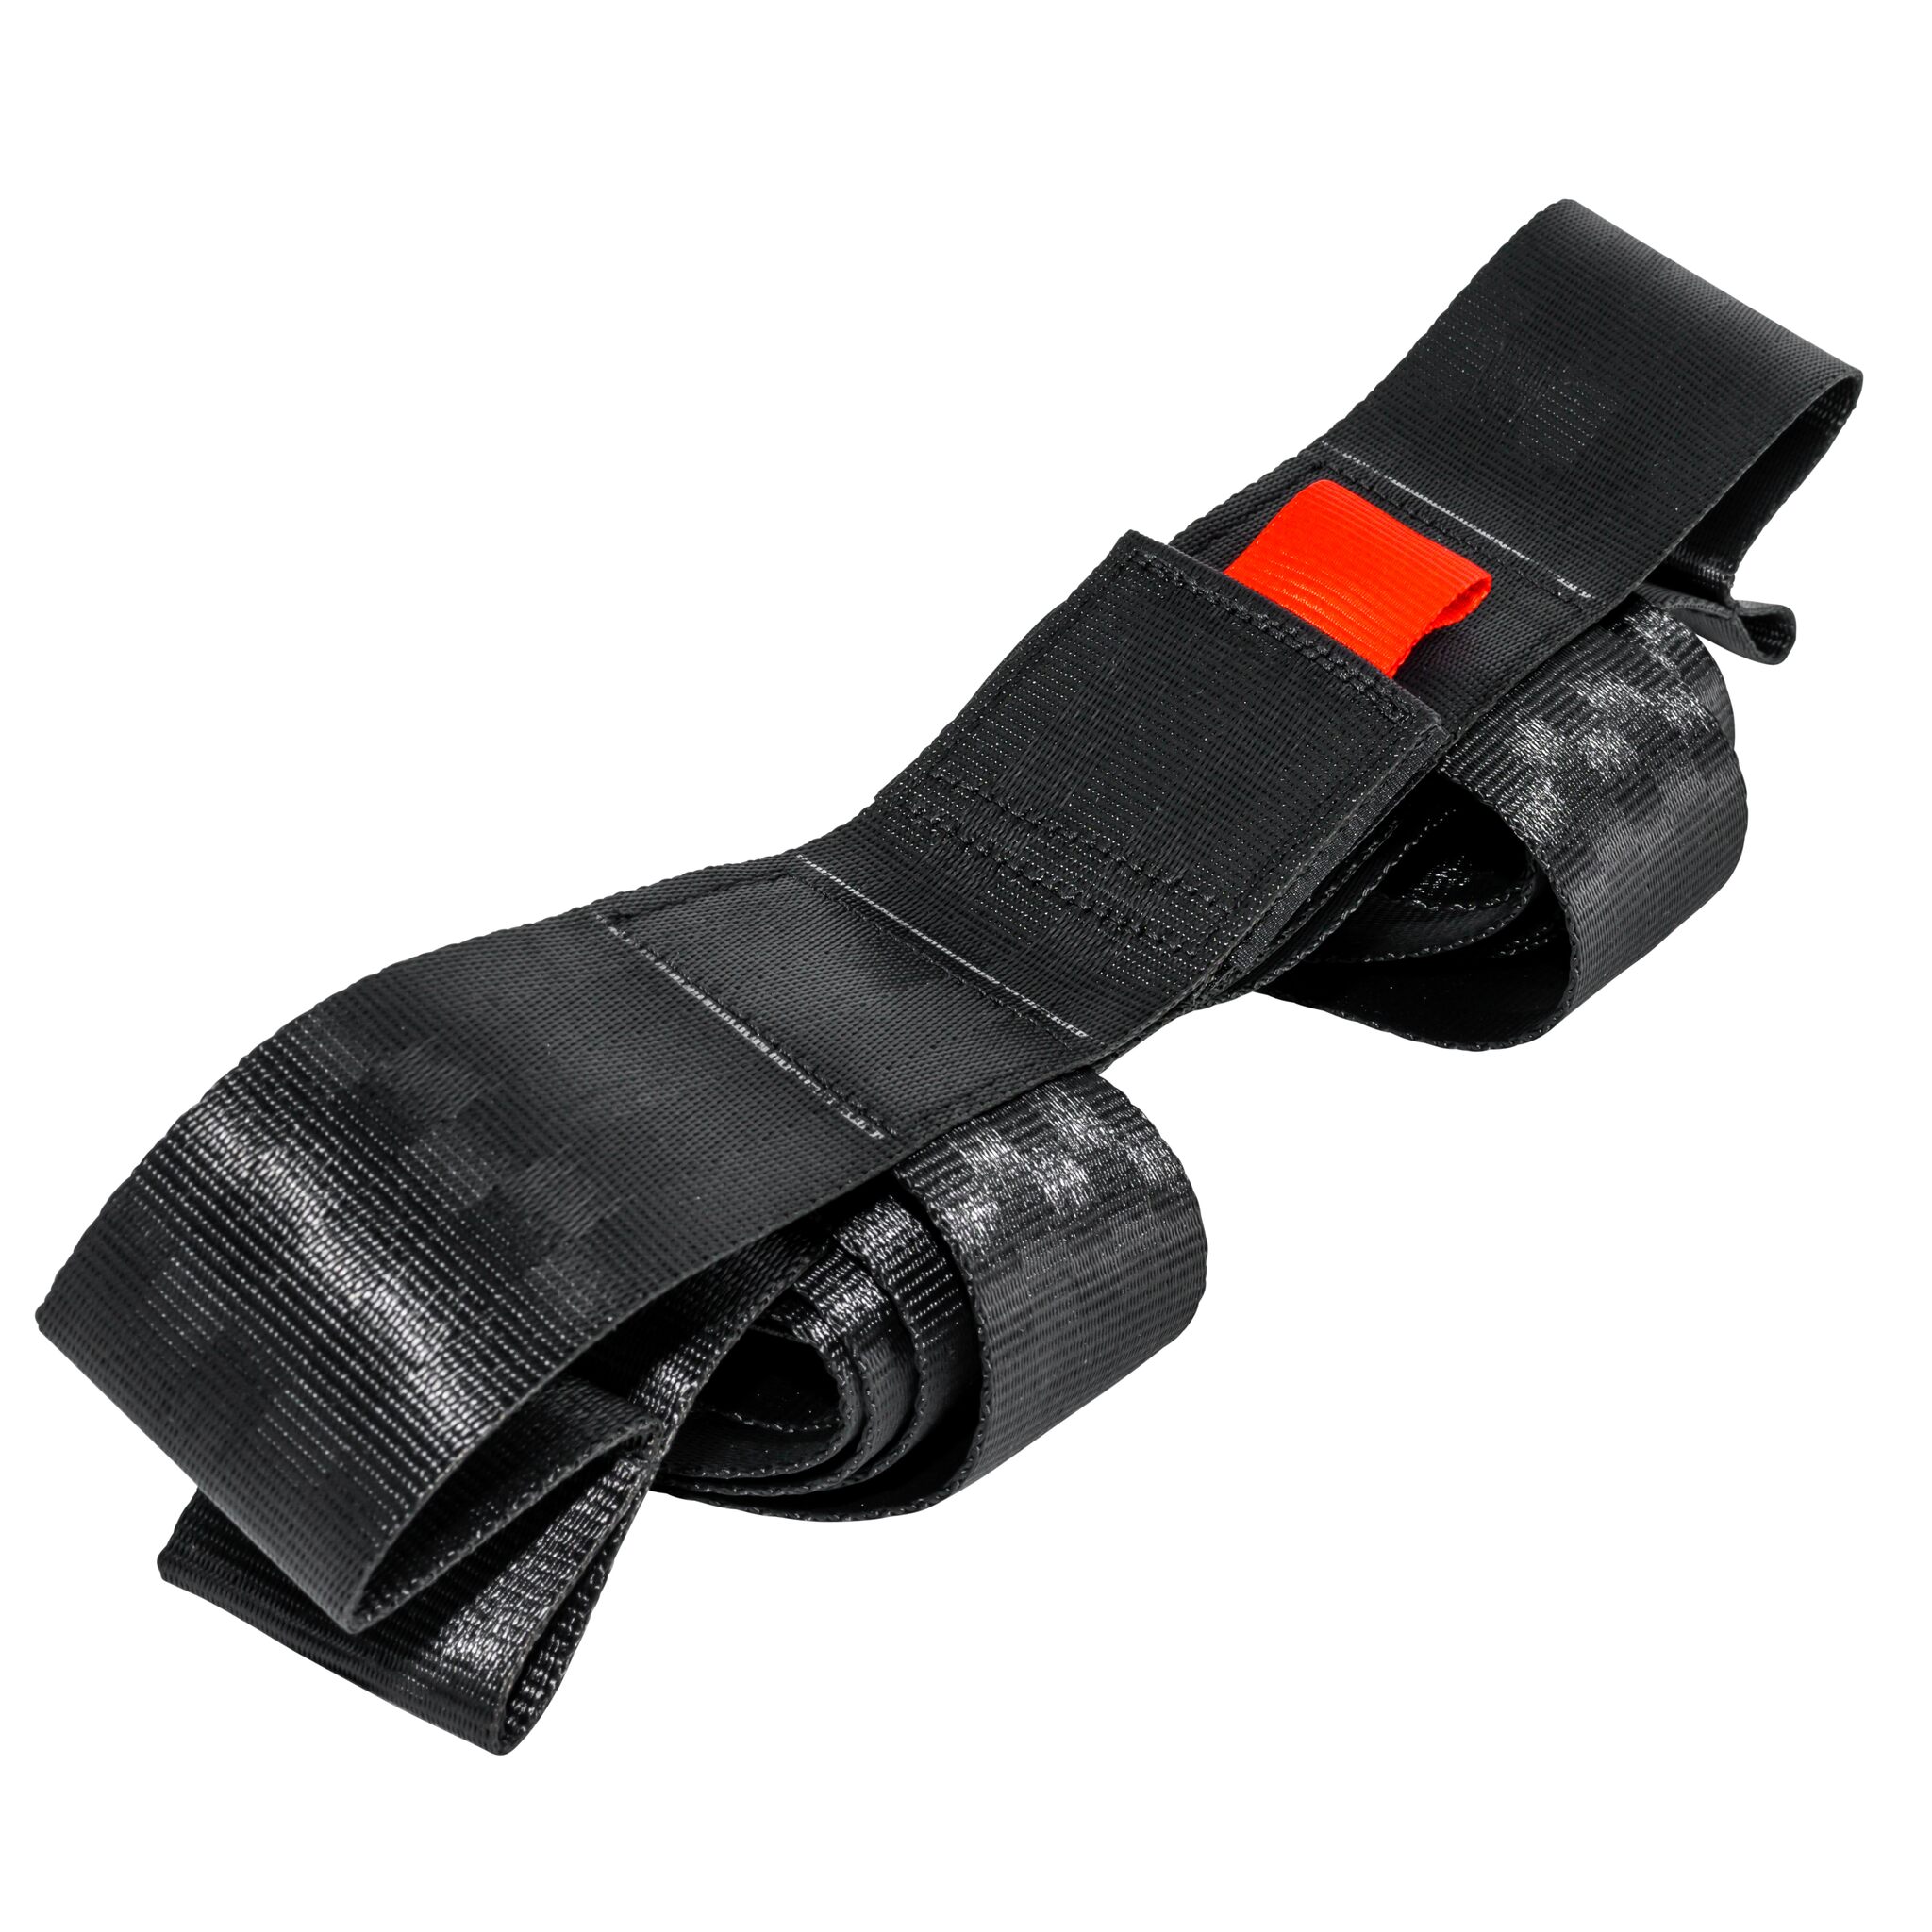 Strap holder for SECU 17 solid vest